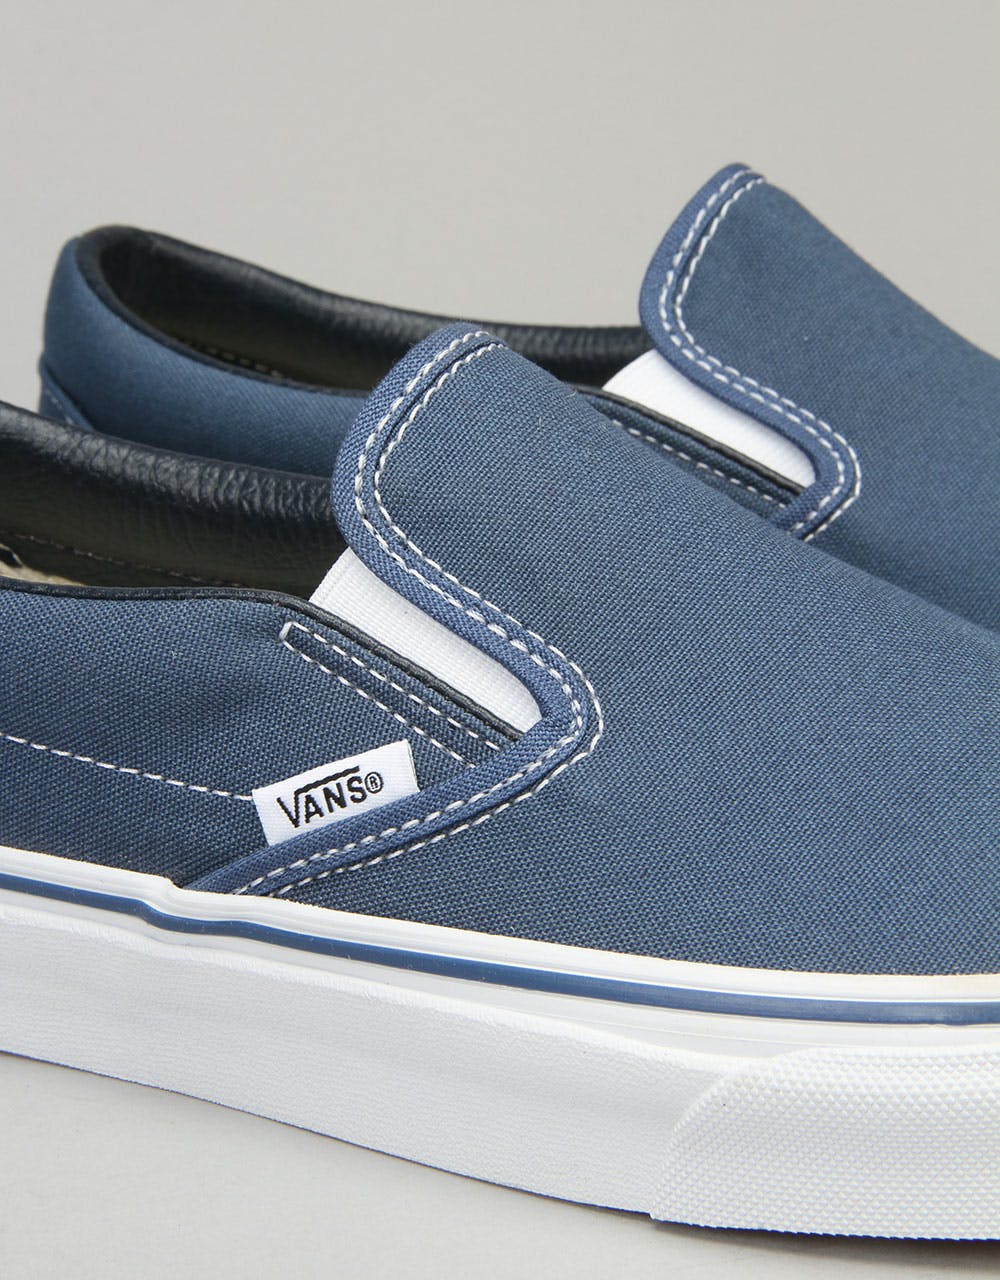 Vans Classic Slip On Skate Shoes - Navy